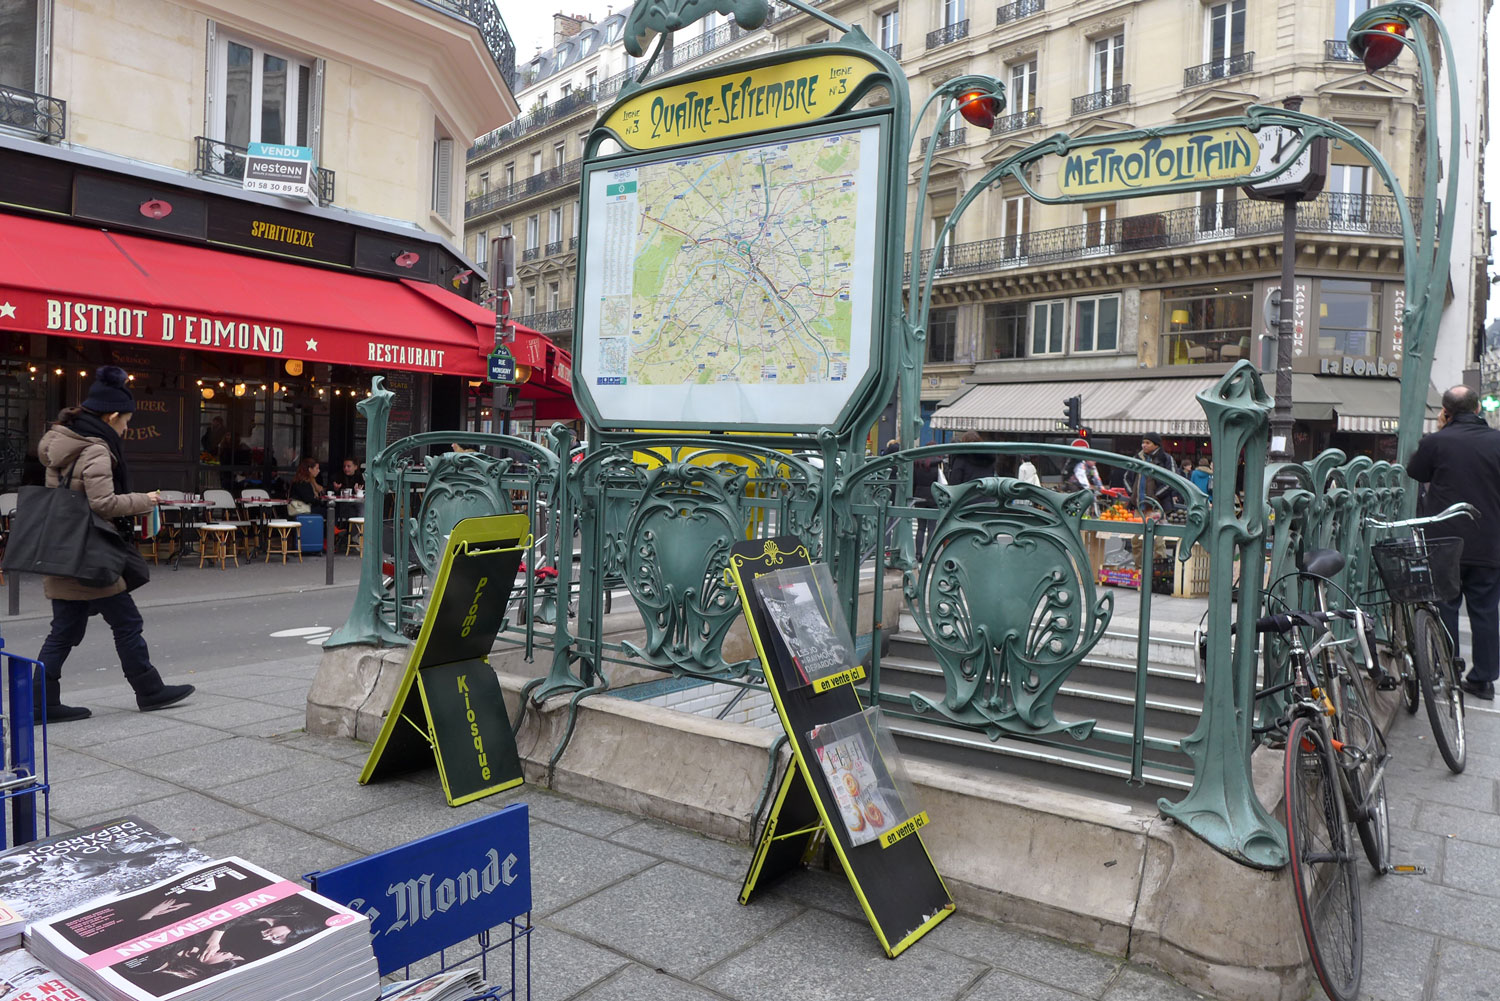 La station de métro du 4 septembre à Paris est la plus proche du bureau des Jeunes Européens France